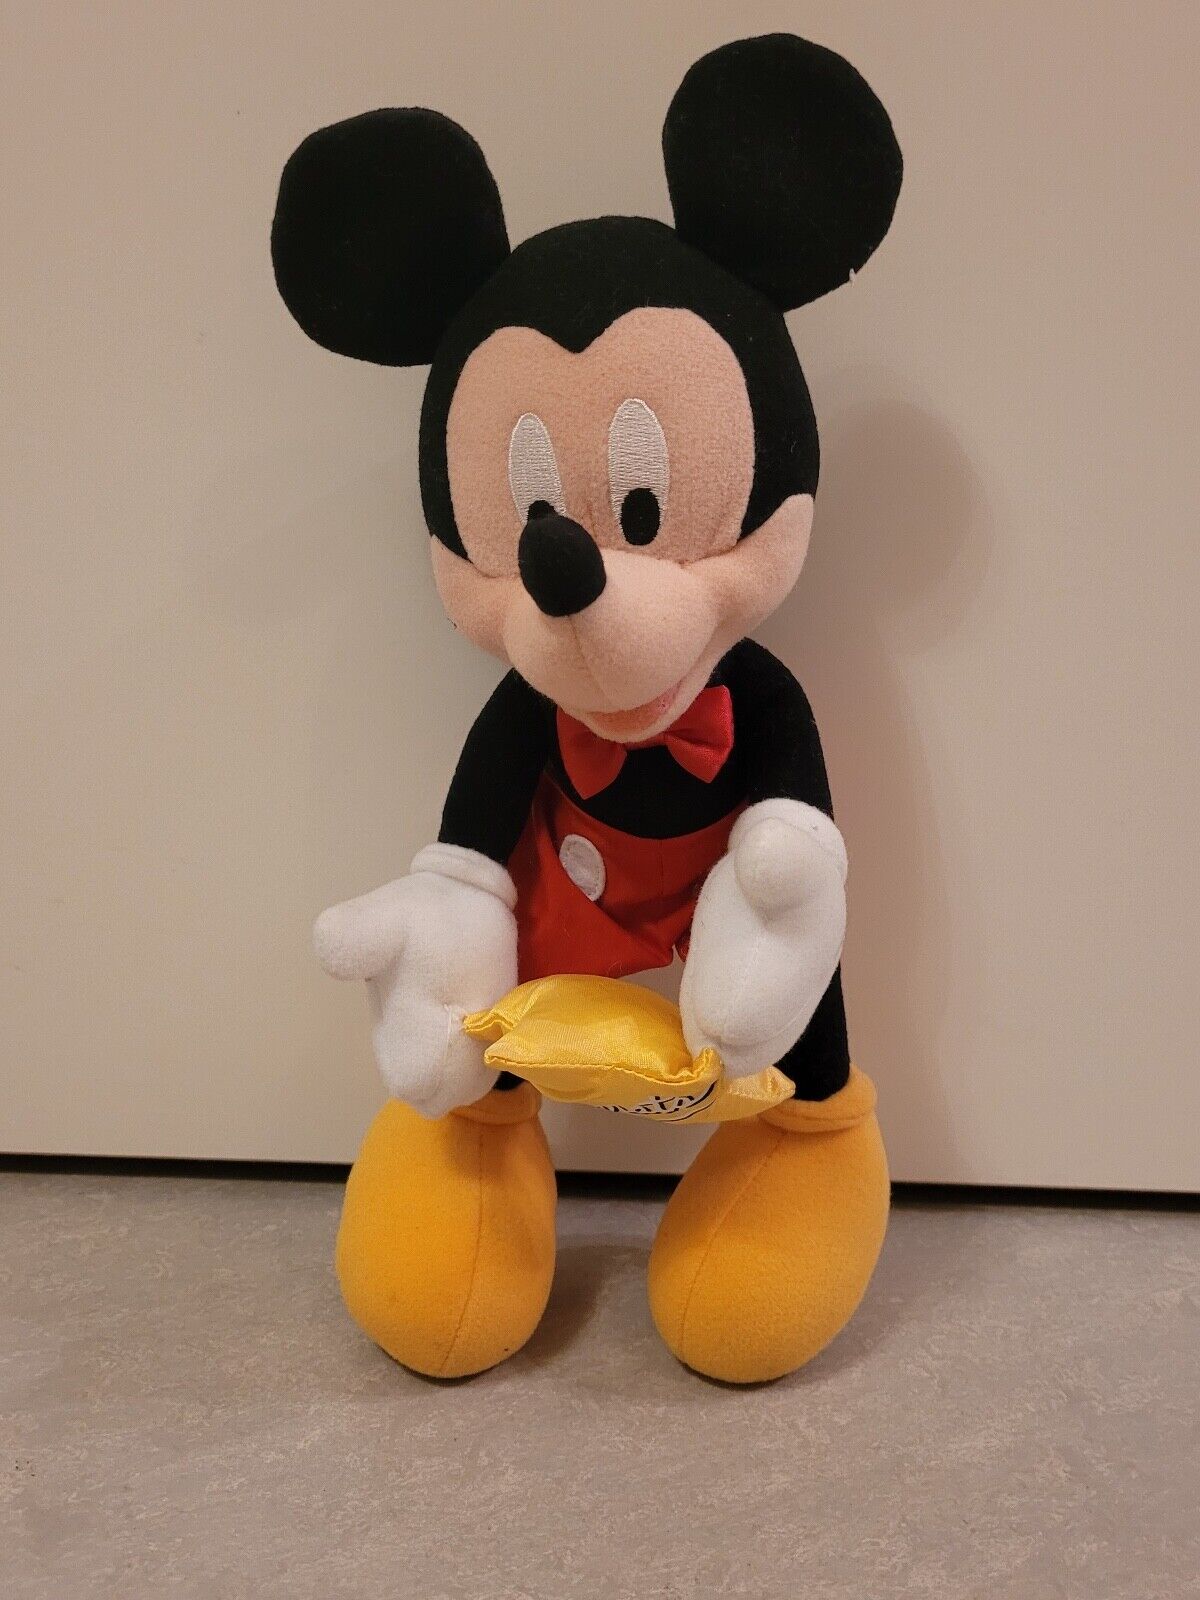 applause: Plsch Stofftier Kuscheltier Disney Mickey Maus Congrats ca. 34 cm